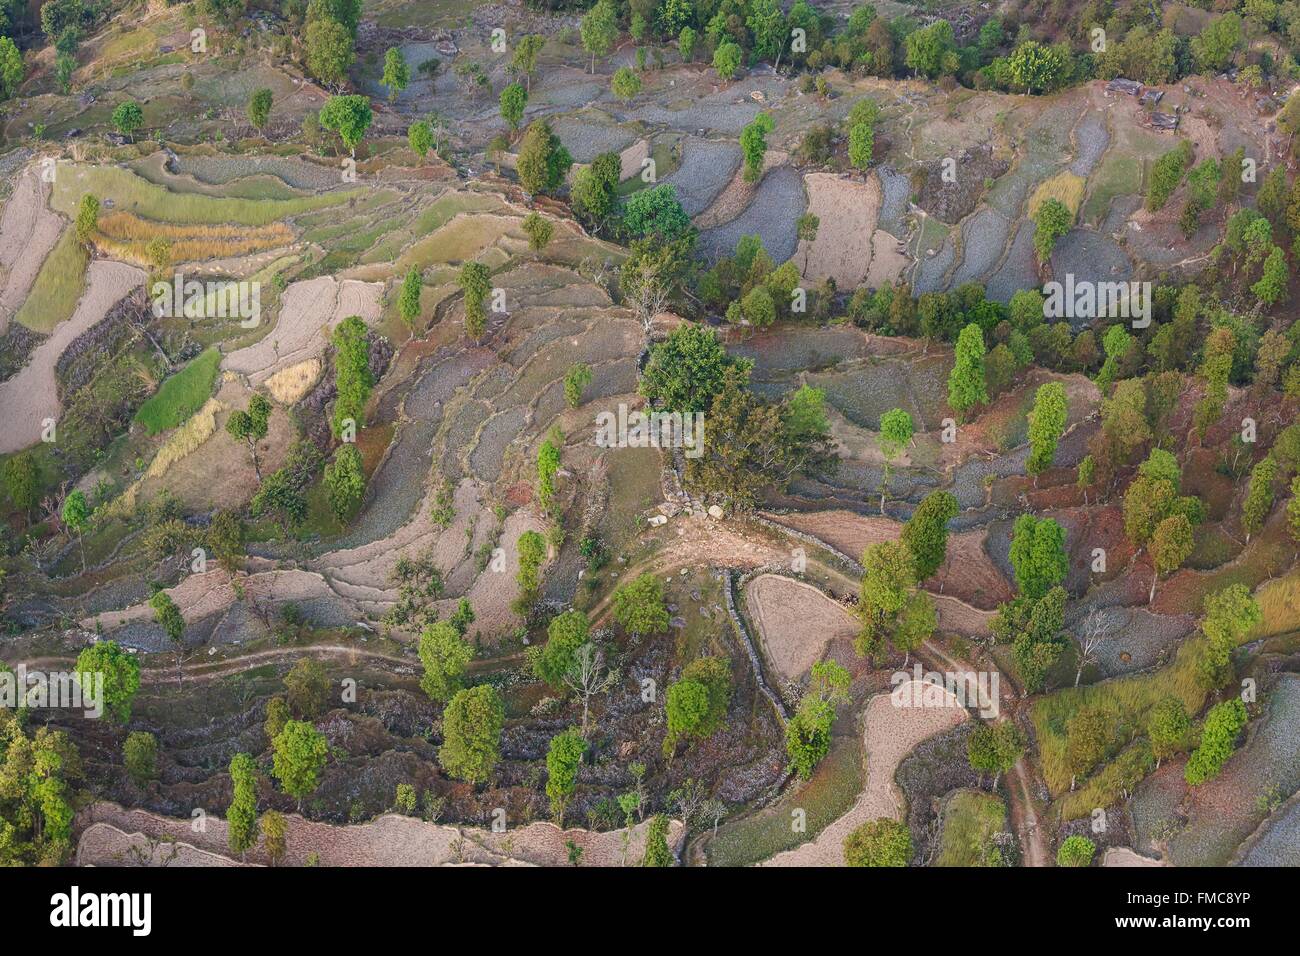 Le Népal, Gandaki zone, Pokhara, les rizières en terrasse (vue aérienne) Banque D'Images